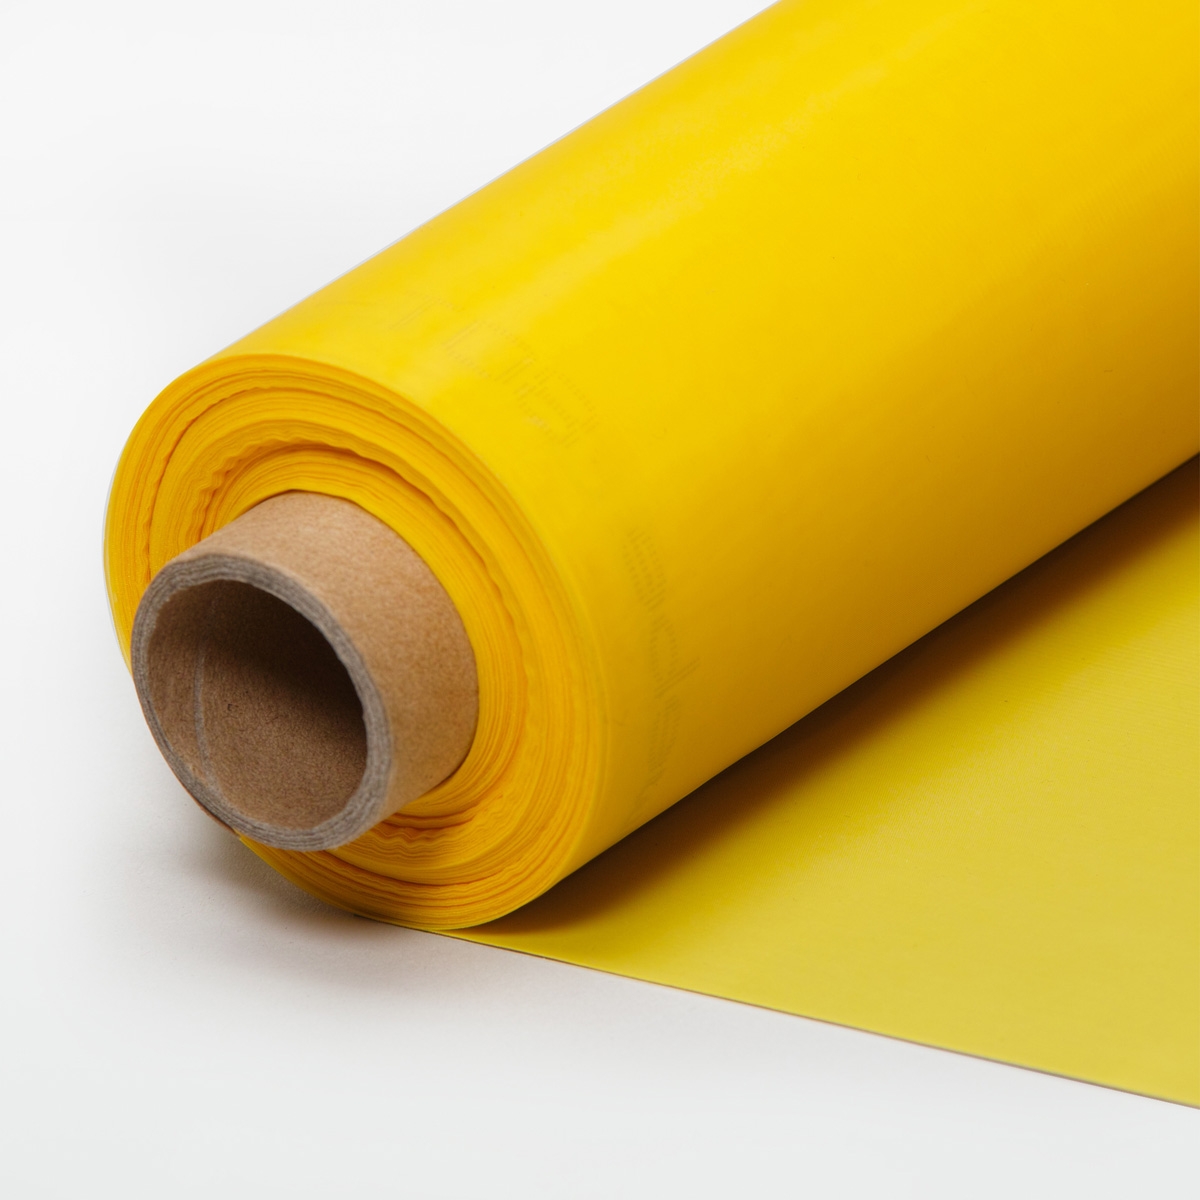 Siebdruckrahmen 140T gelb in 61x51cm für den Siebdruck Textildruck A4 Drucksieb 